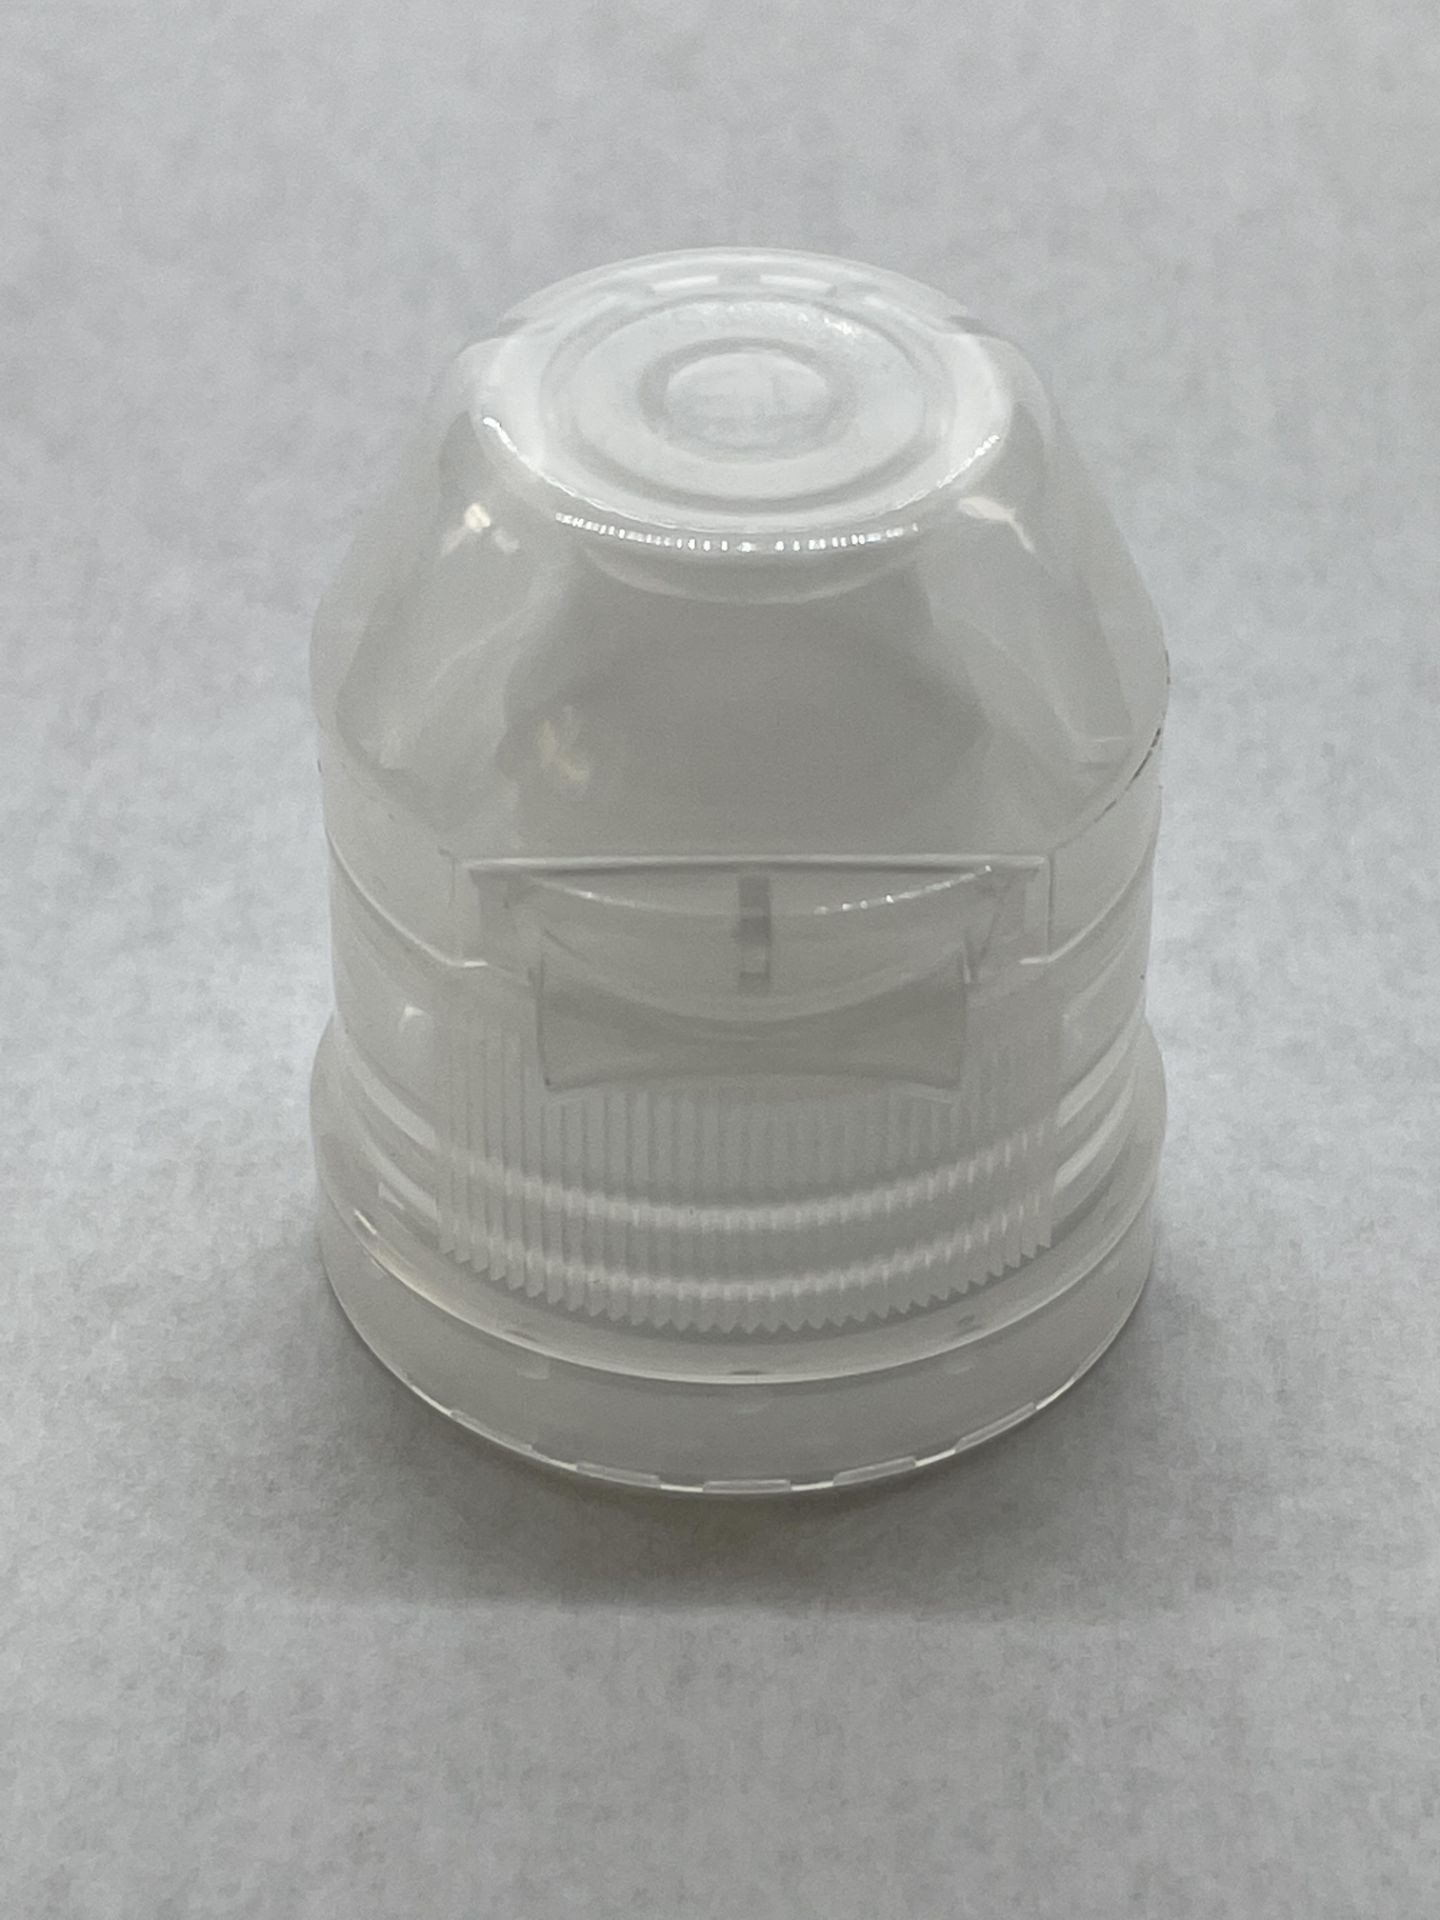 170,000 - Popular Aptar Water bottle sport cap for 16 oz bottle, 28-410 Threading - Image 4 of 6